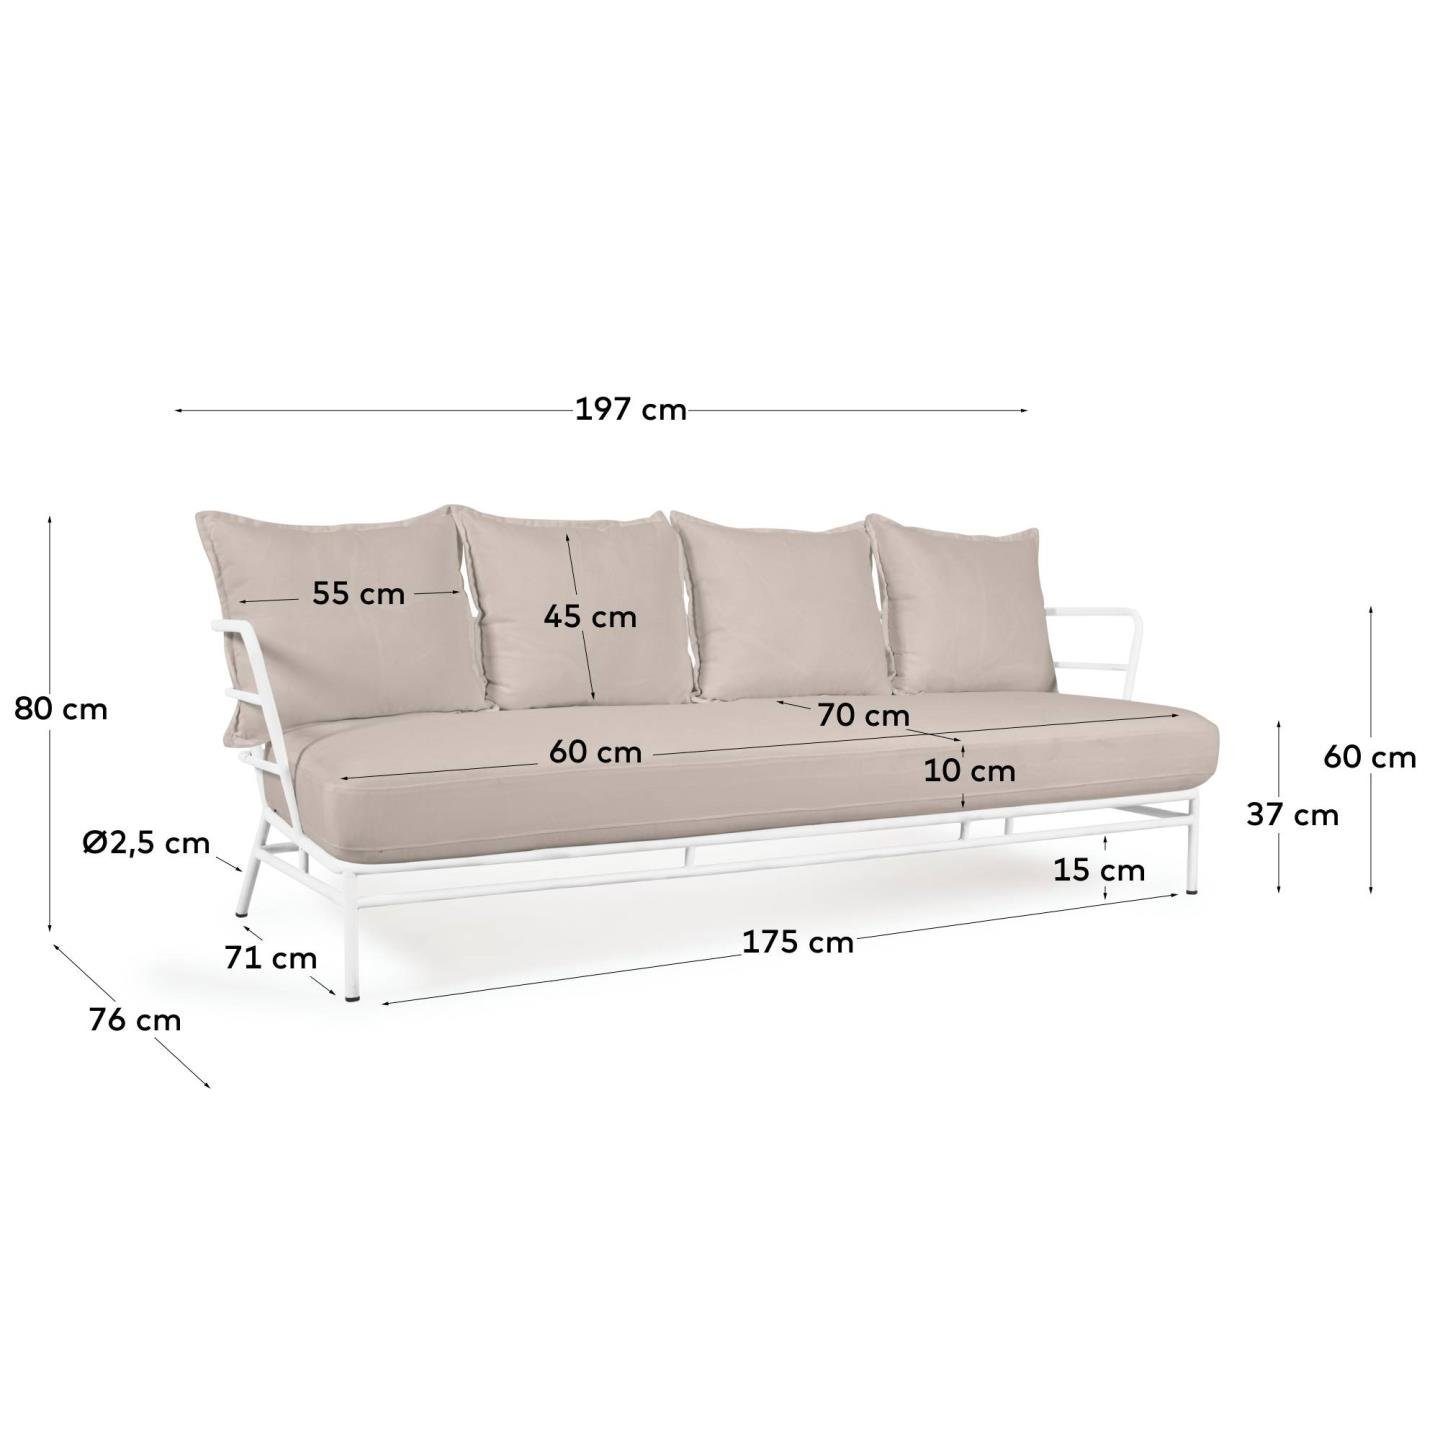 75 3-Sitzer cm 60 Wohnzimmern Stahl Mareluz Natur24 Couch x x Sofa 197 Sofa